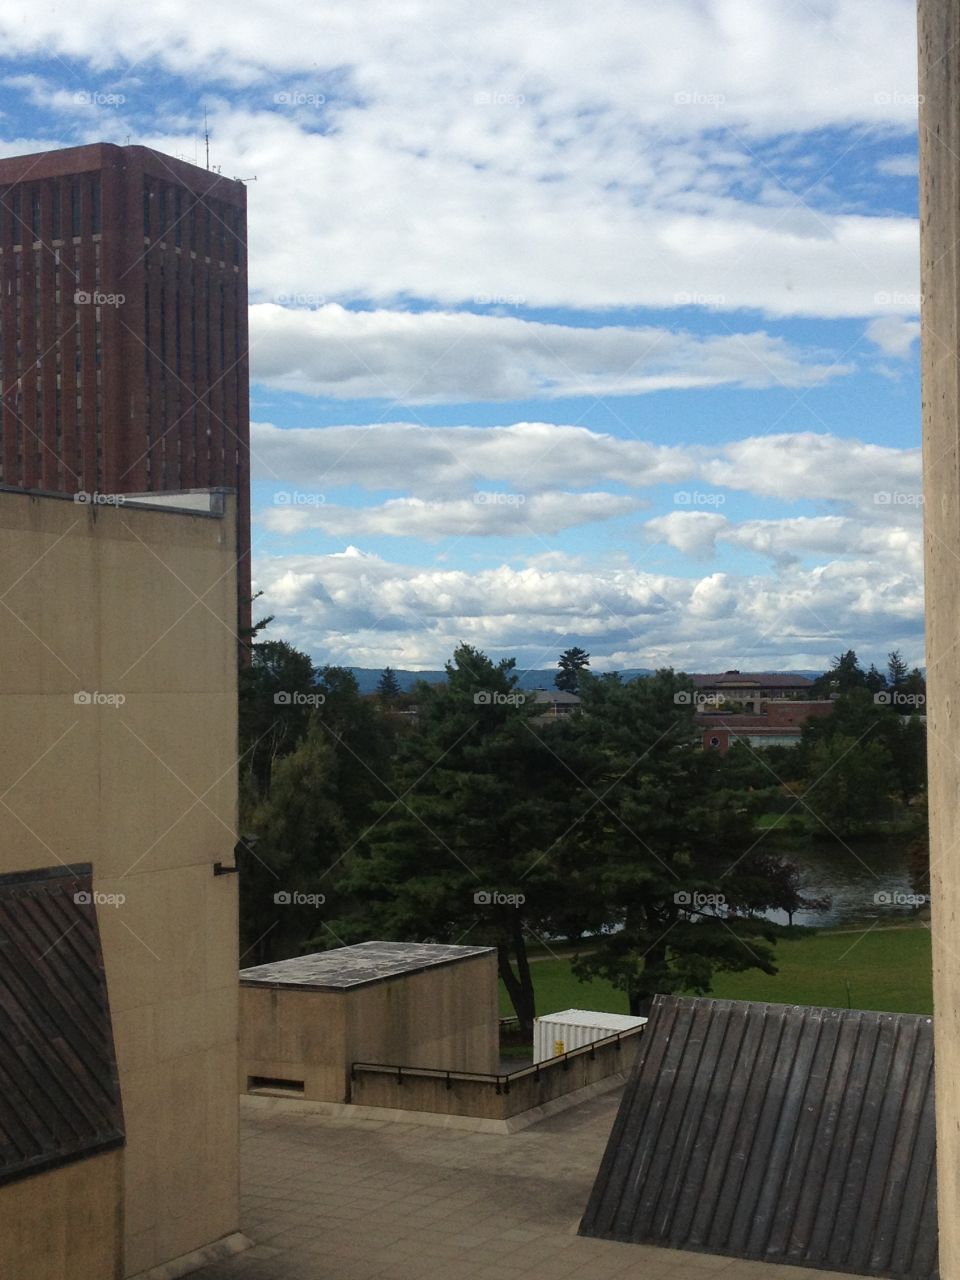 Blue skies as seen from the UMass Fine Art Center